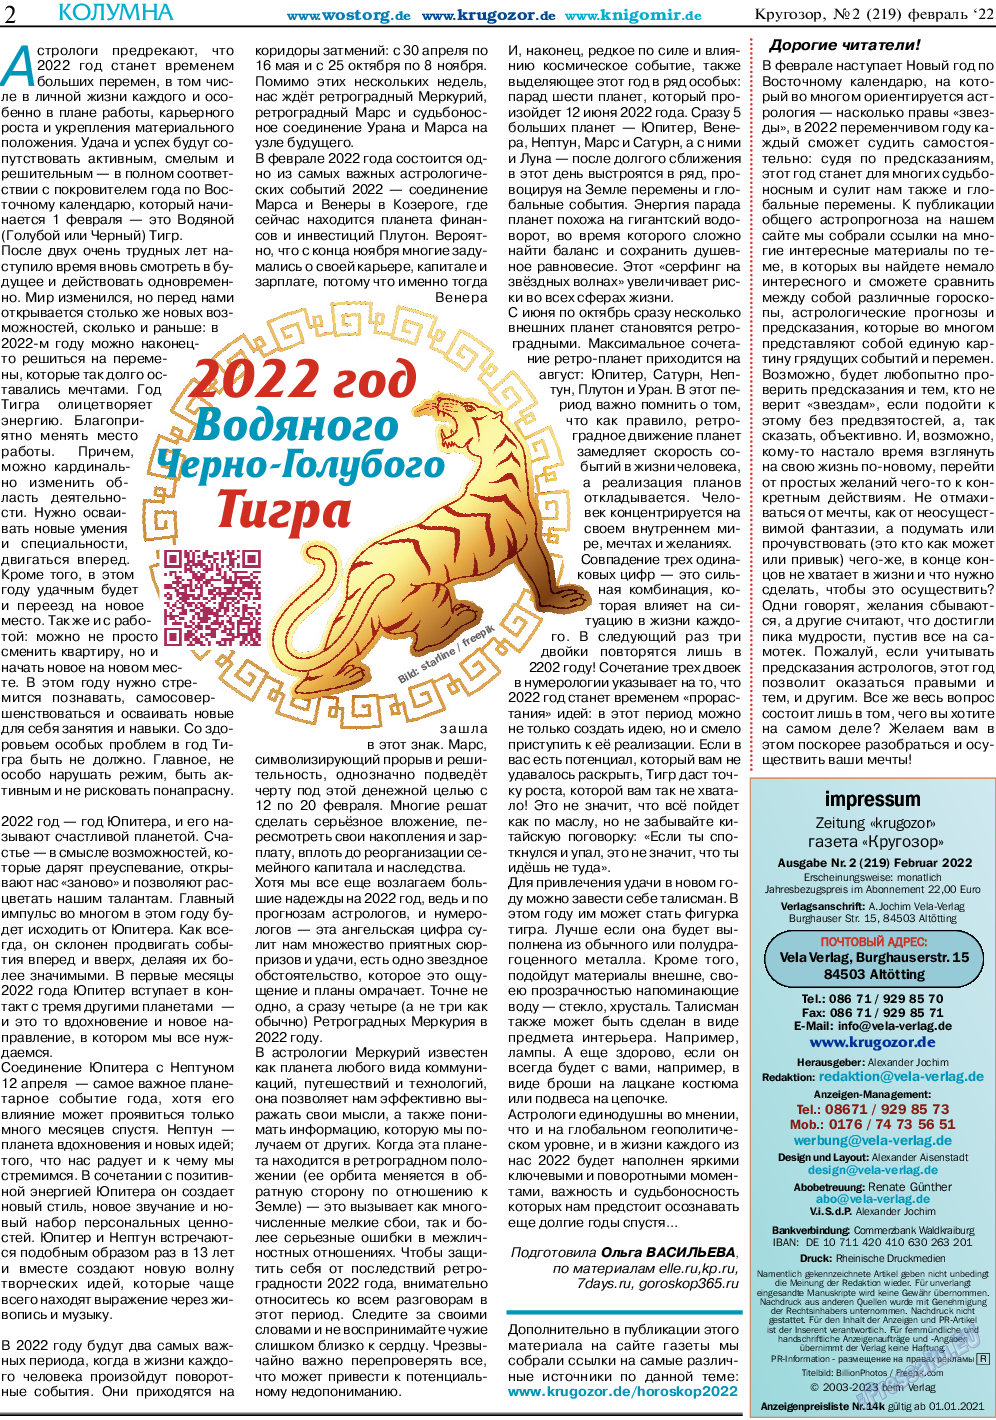 Кругозор (газета). 2022 год, номер 2, стр. 2